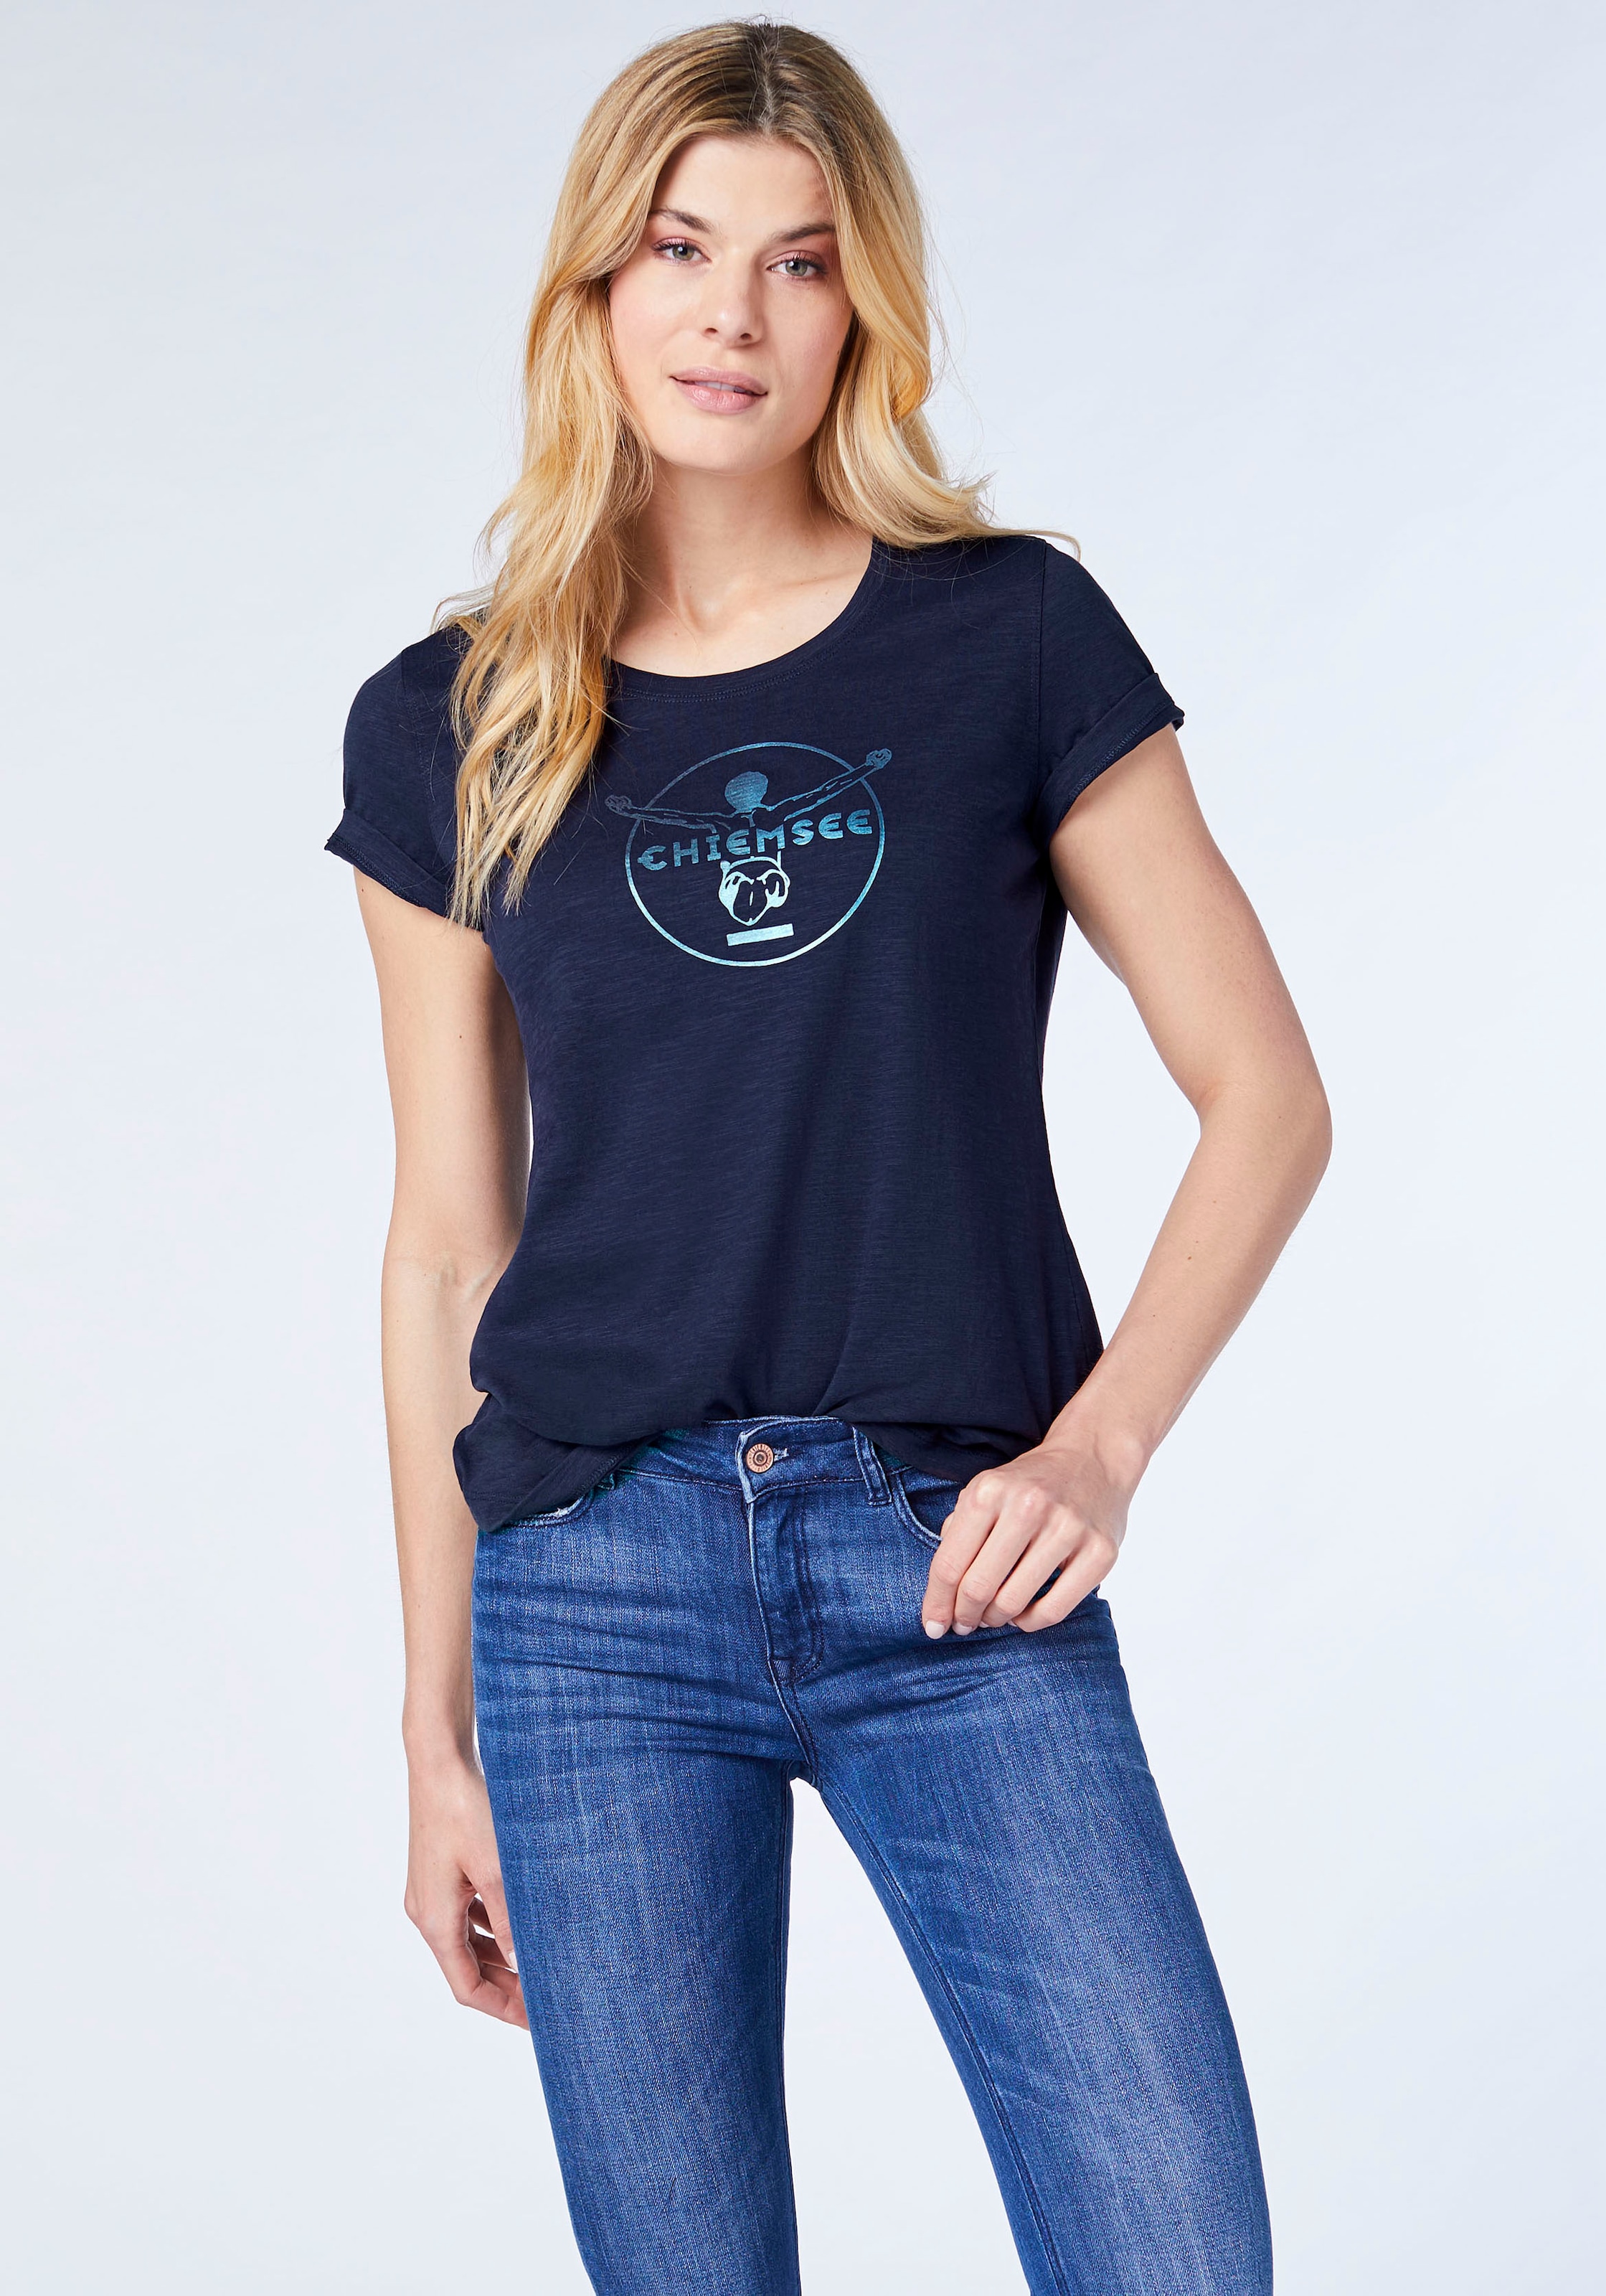 BAUR Chiemsee für T-Shirt | kaufen